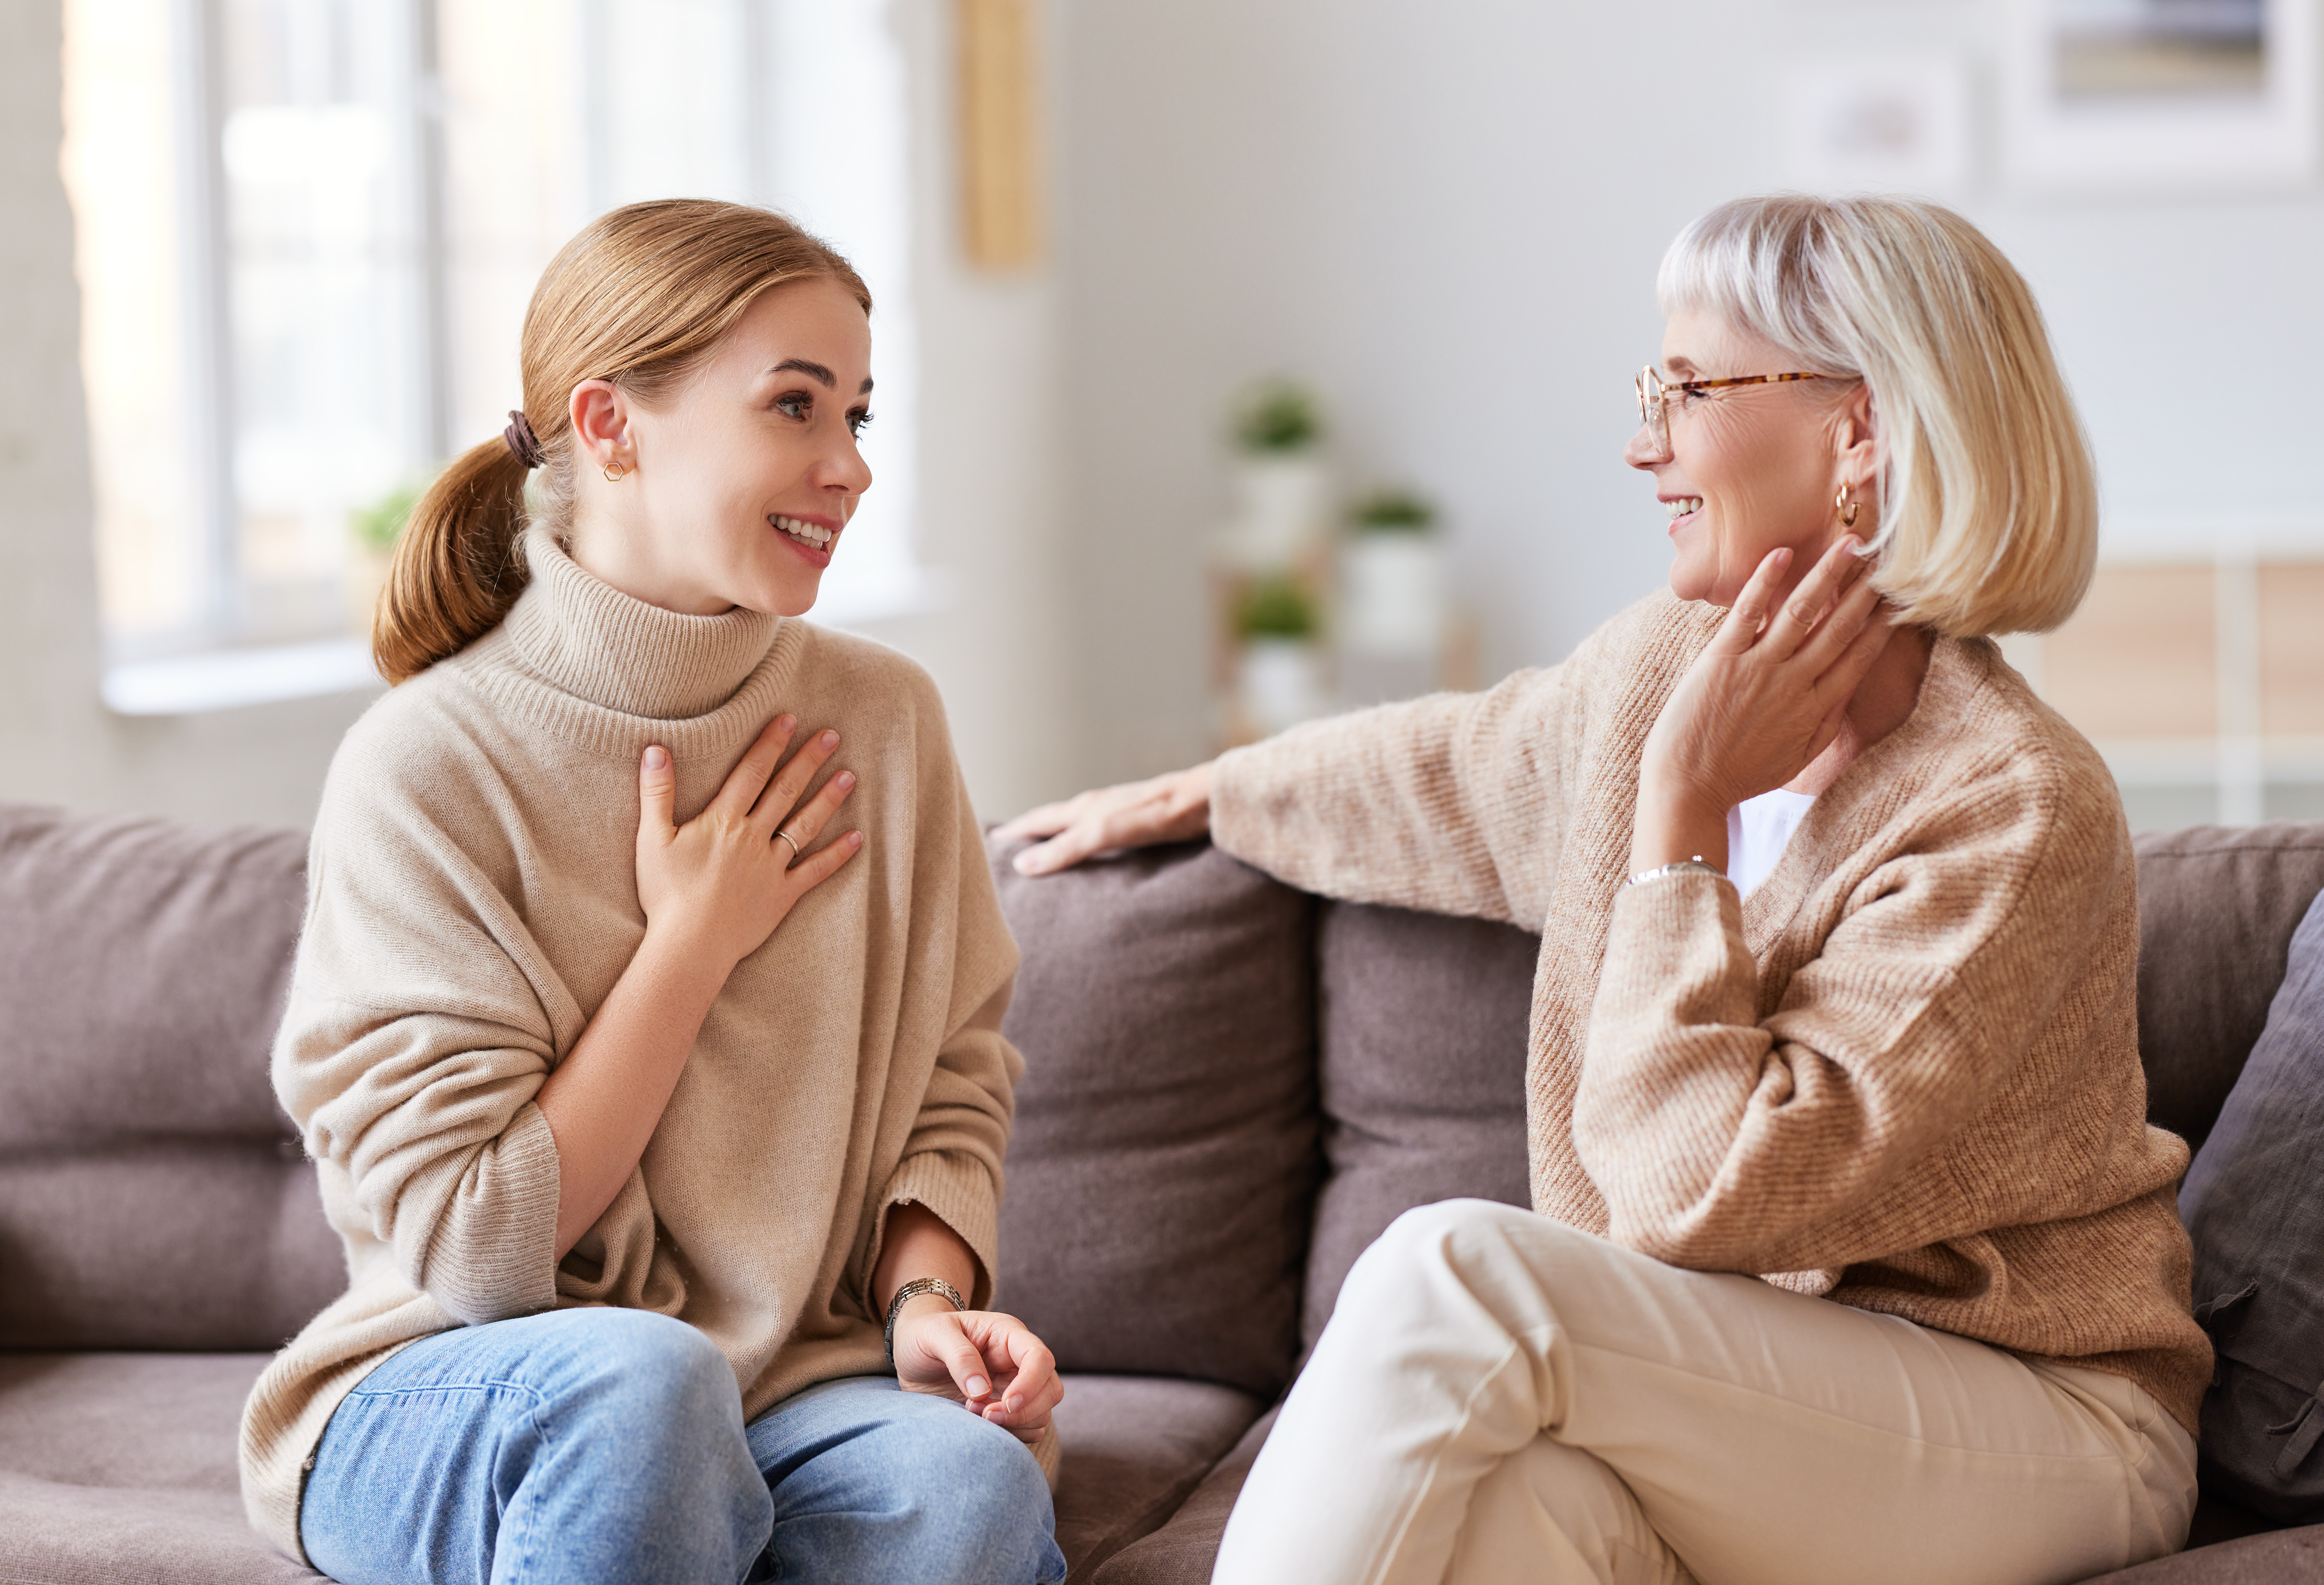 Une jeune femme sourit tout en parlant à une personne plus âgée, assise sur un canapé | Source : Shutterstock